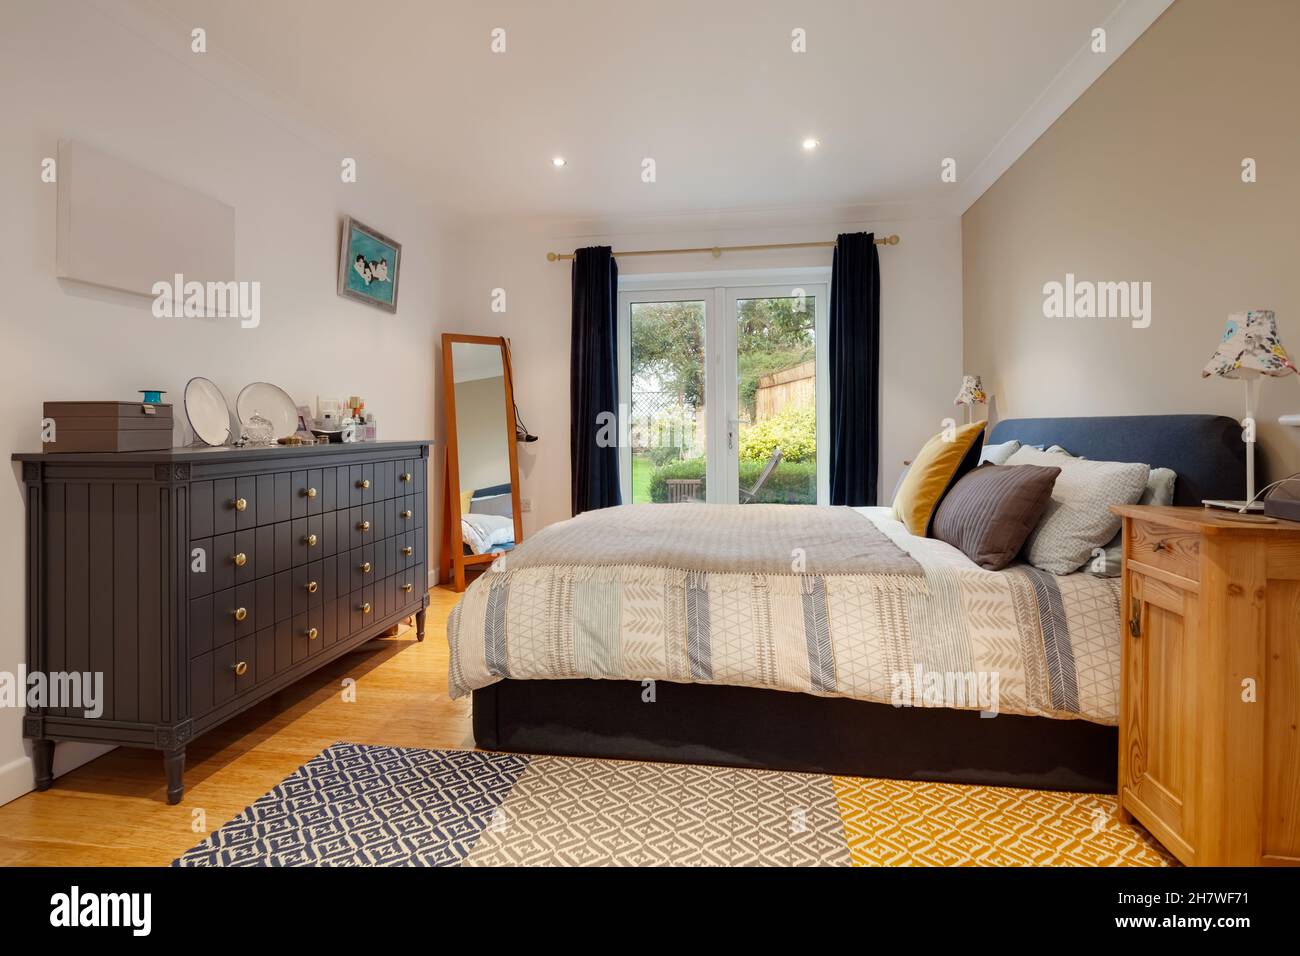 Cambridge, Cambridgeshire - octubre de 1 2019: Dormitorio amueblado de lujo decorado en una manera moderna con muebles y cama de declaración de intenciones Foto de stock